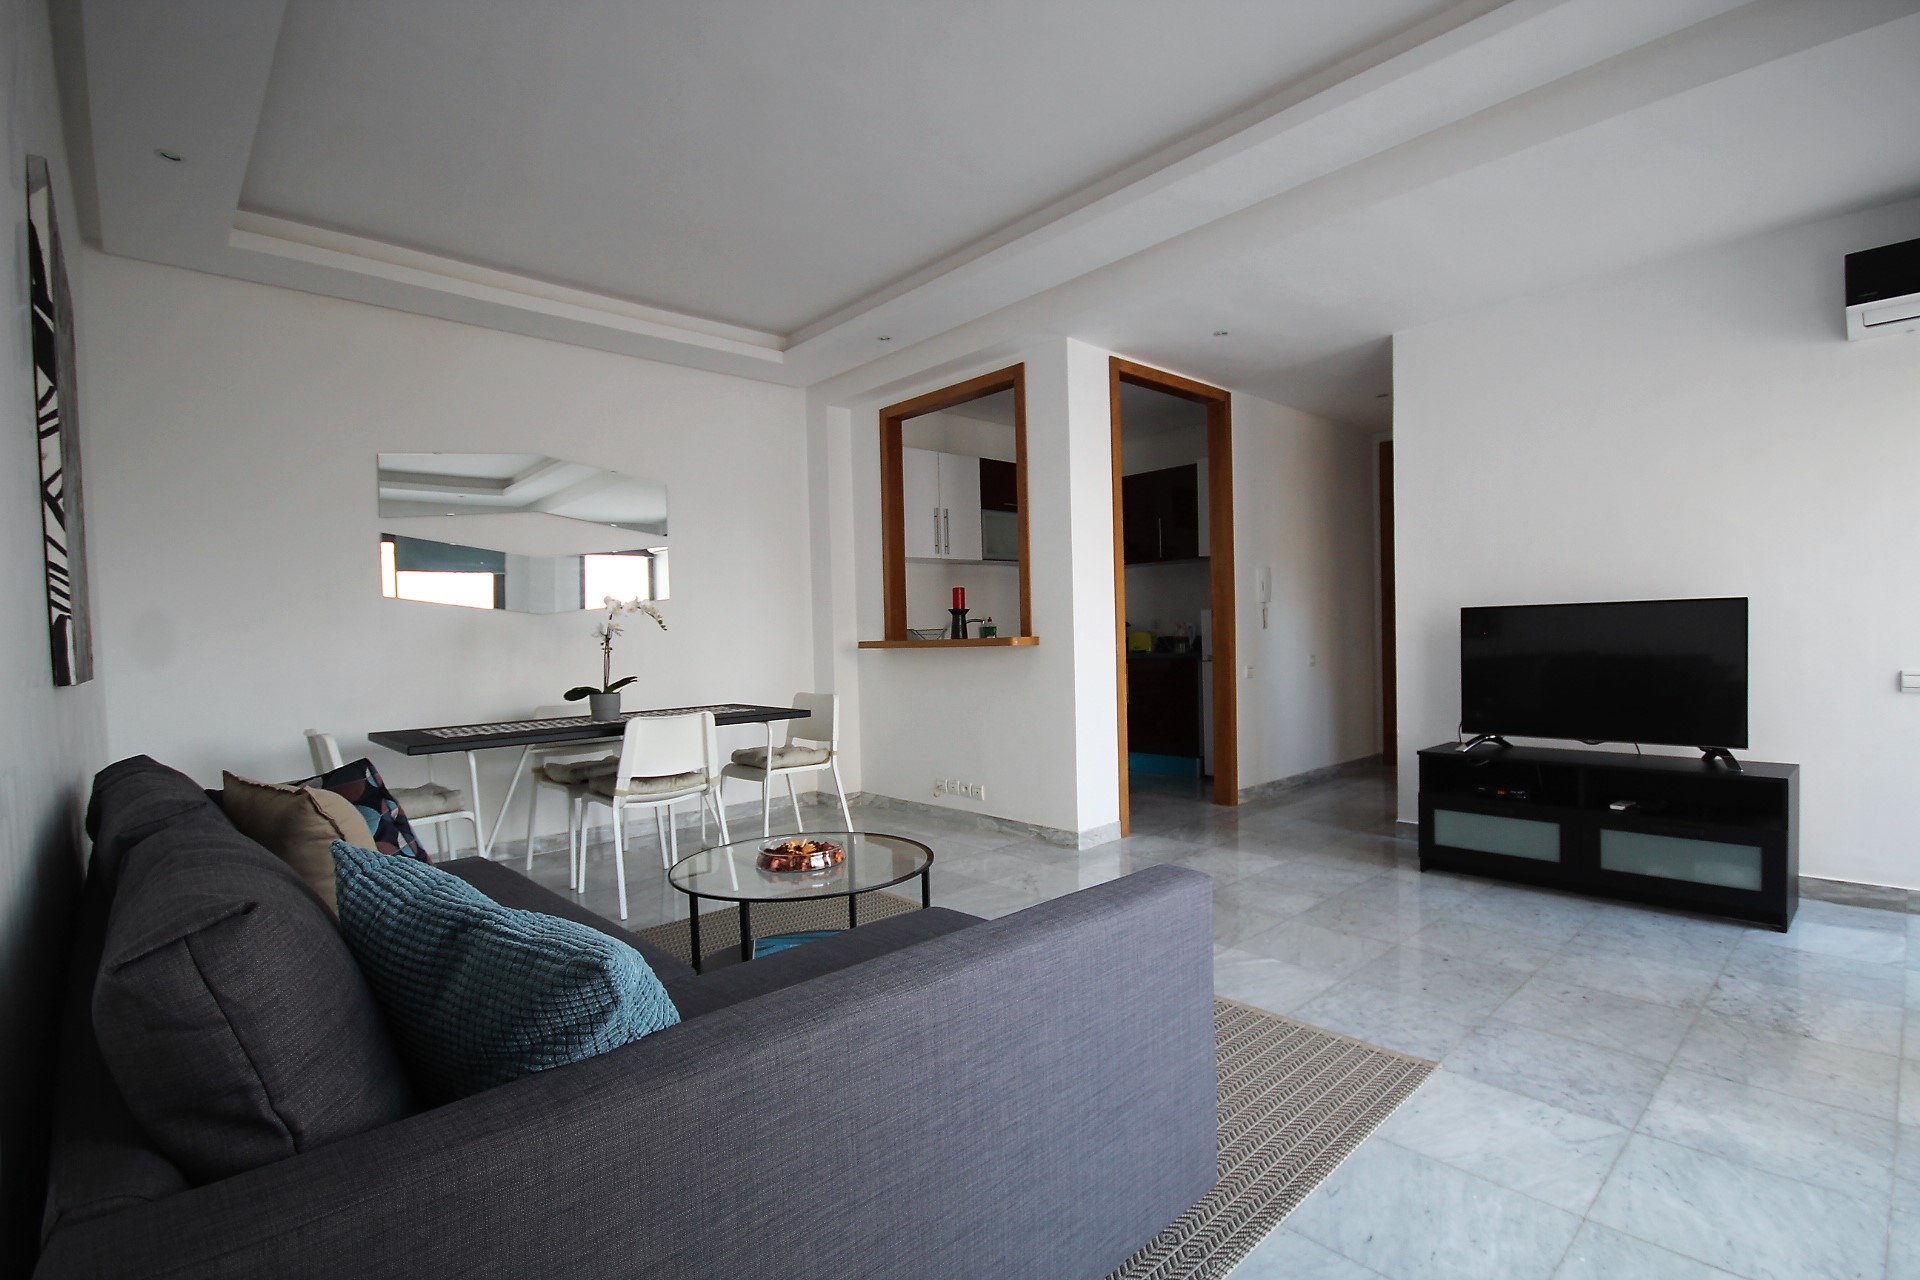 Maroc, Casablanca, Maarif, à louer  lumineux appartements meublés neuf en étage élevé avec terrasse tournante